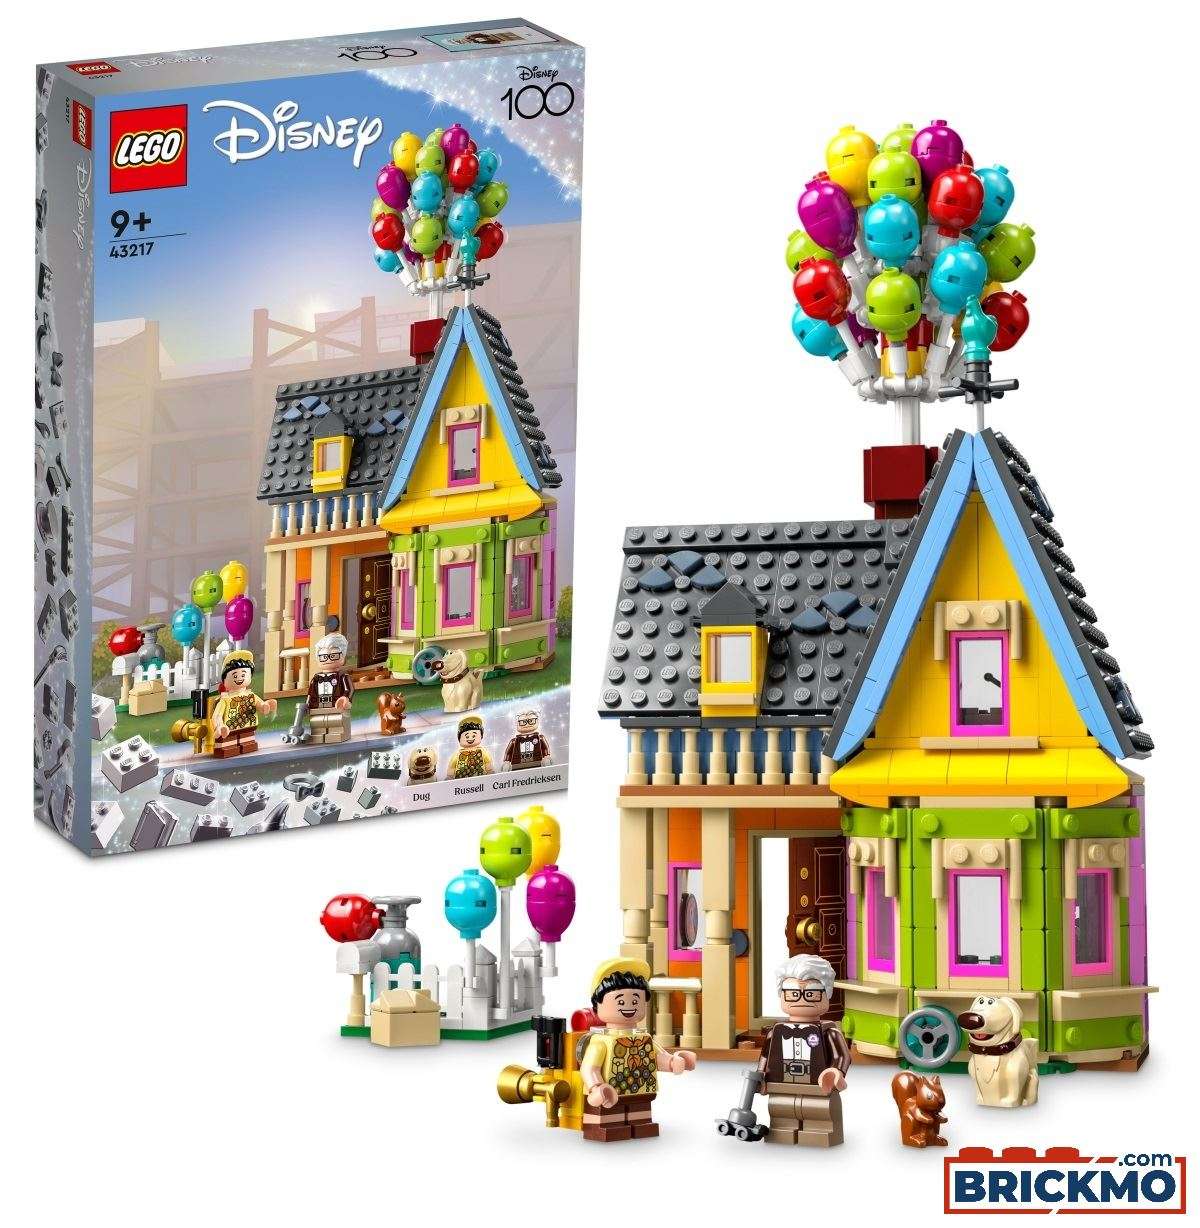 LEGO 43217 ‘Up’ House 43217